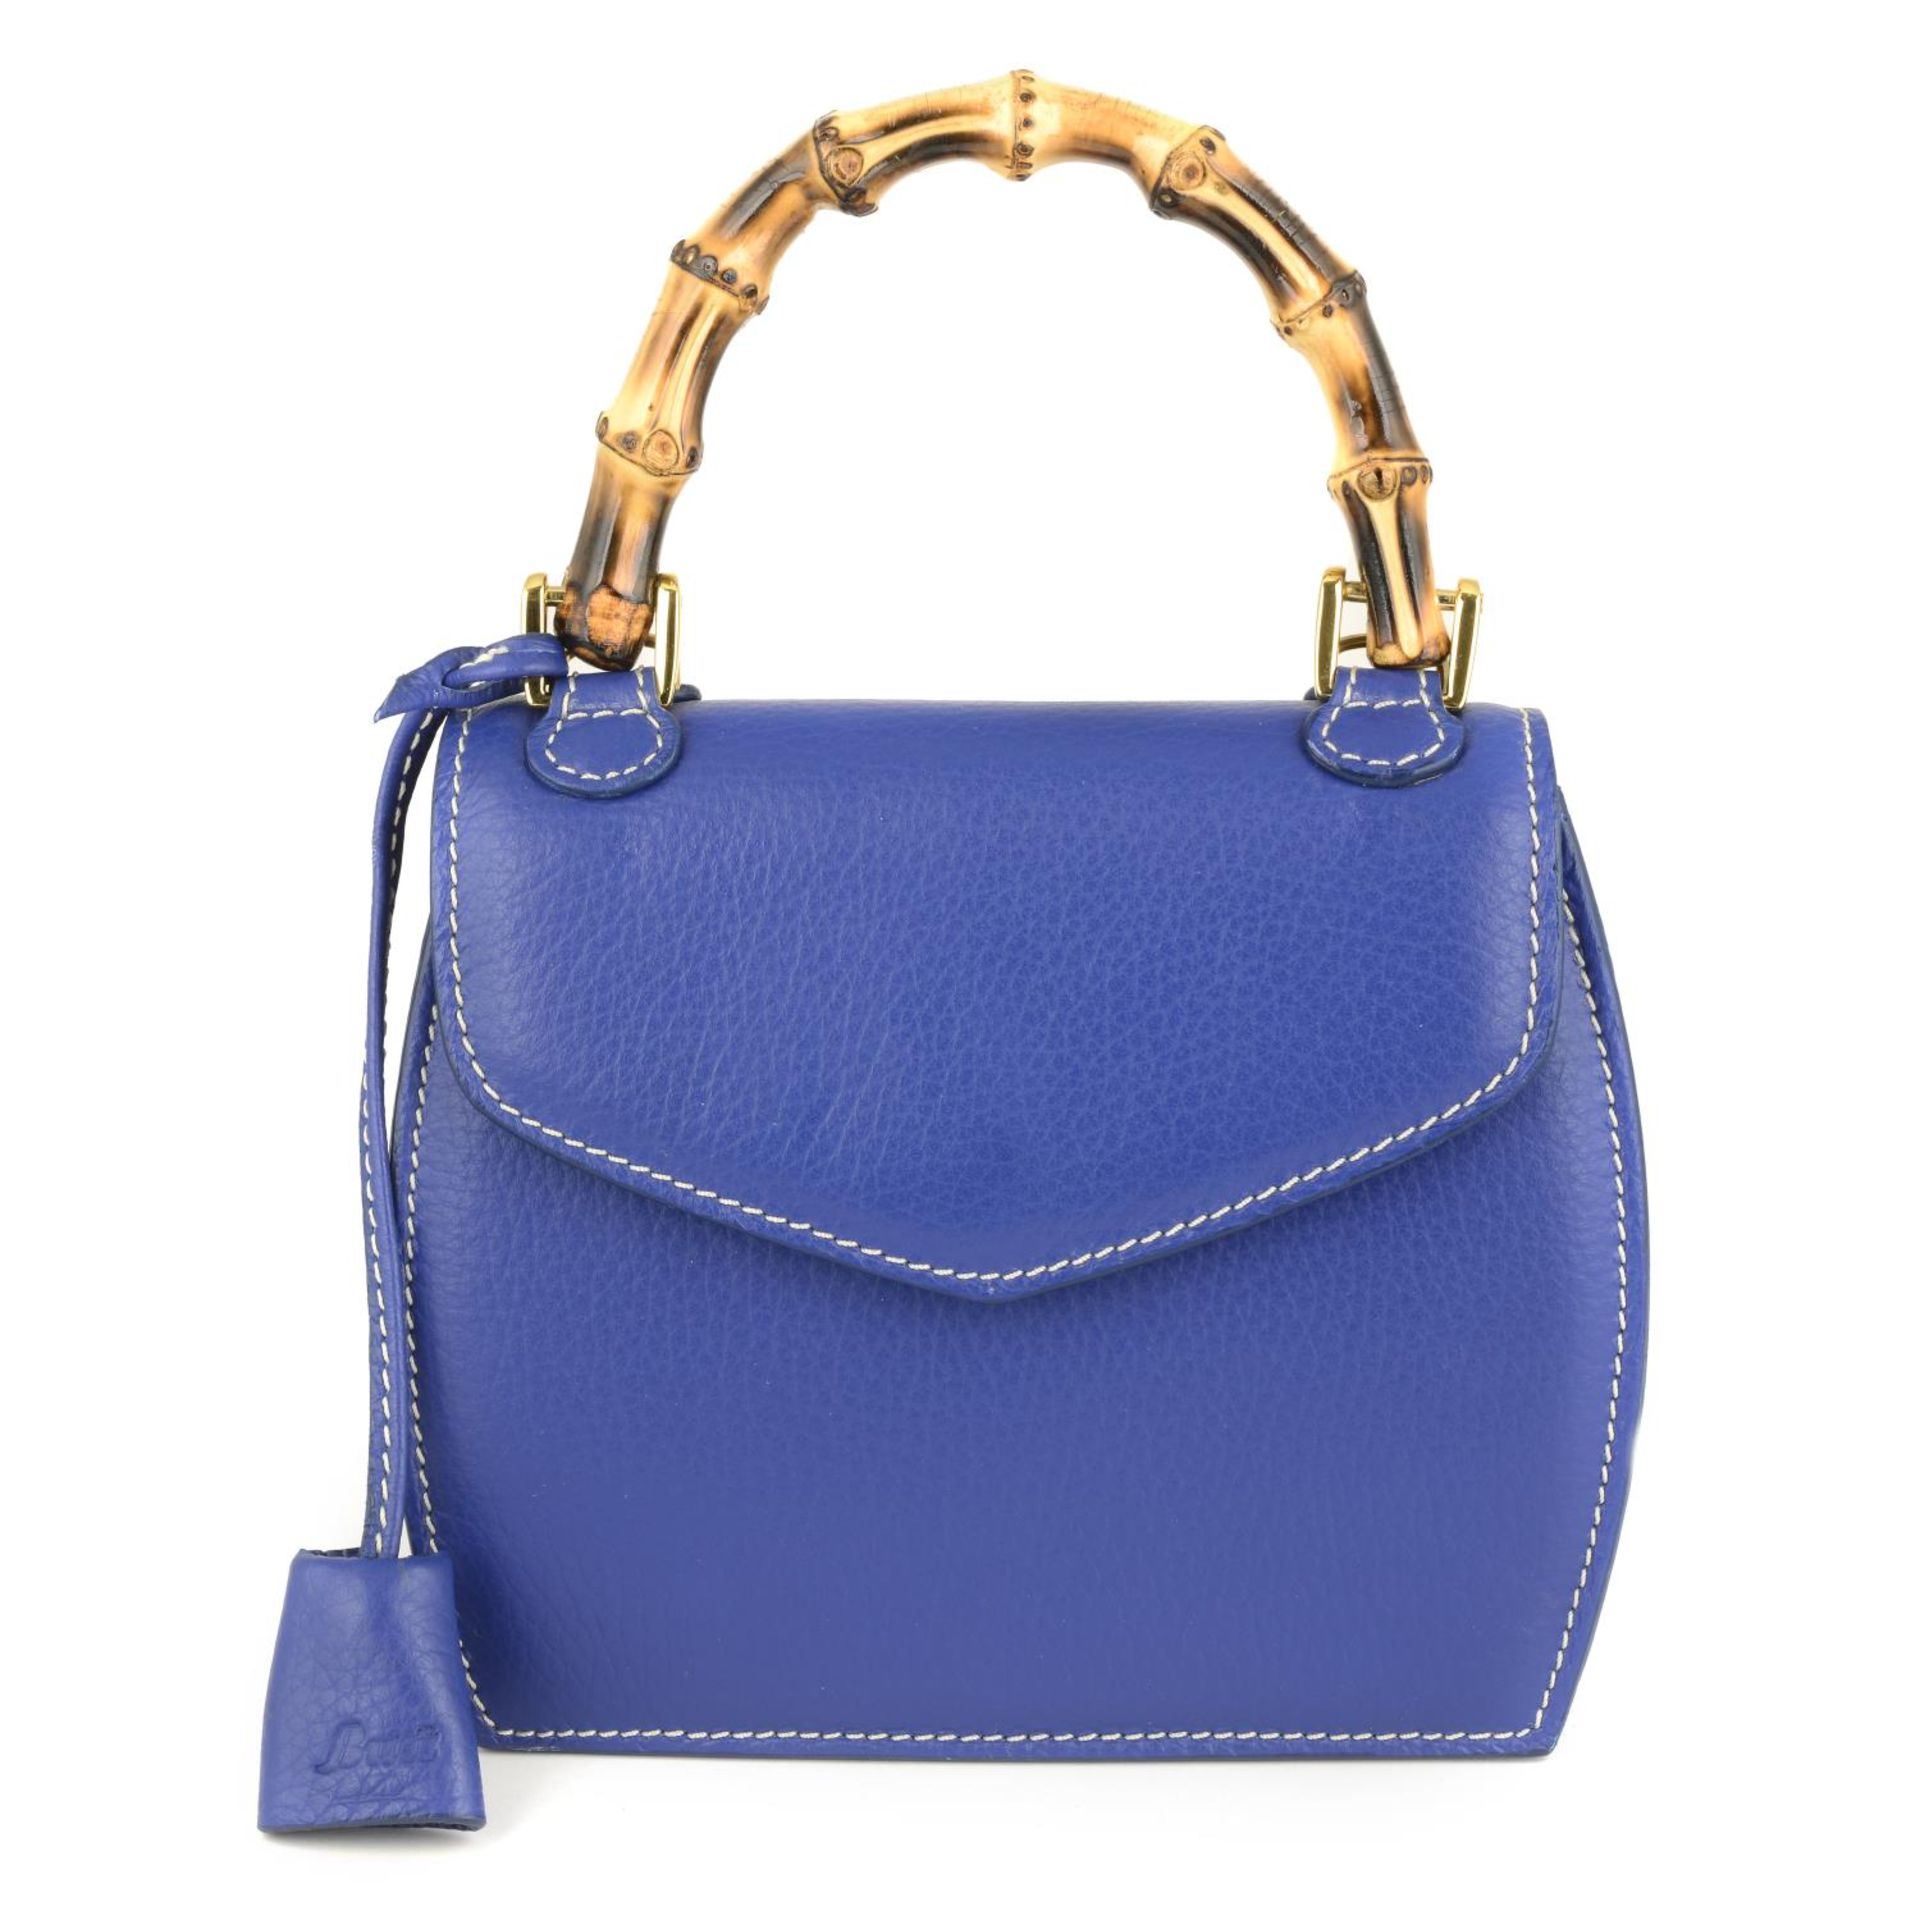 BUTI PELLETTERIE - a mini Minny royal blue leather handbag.